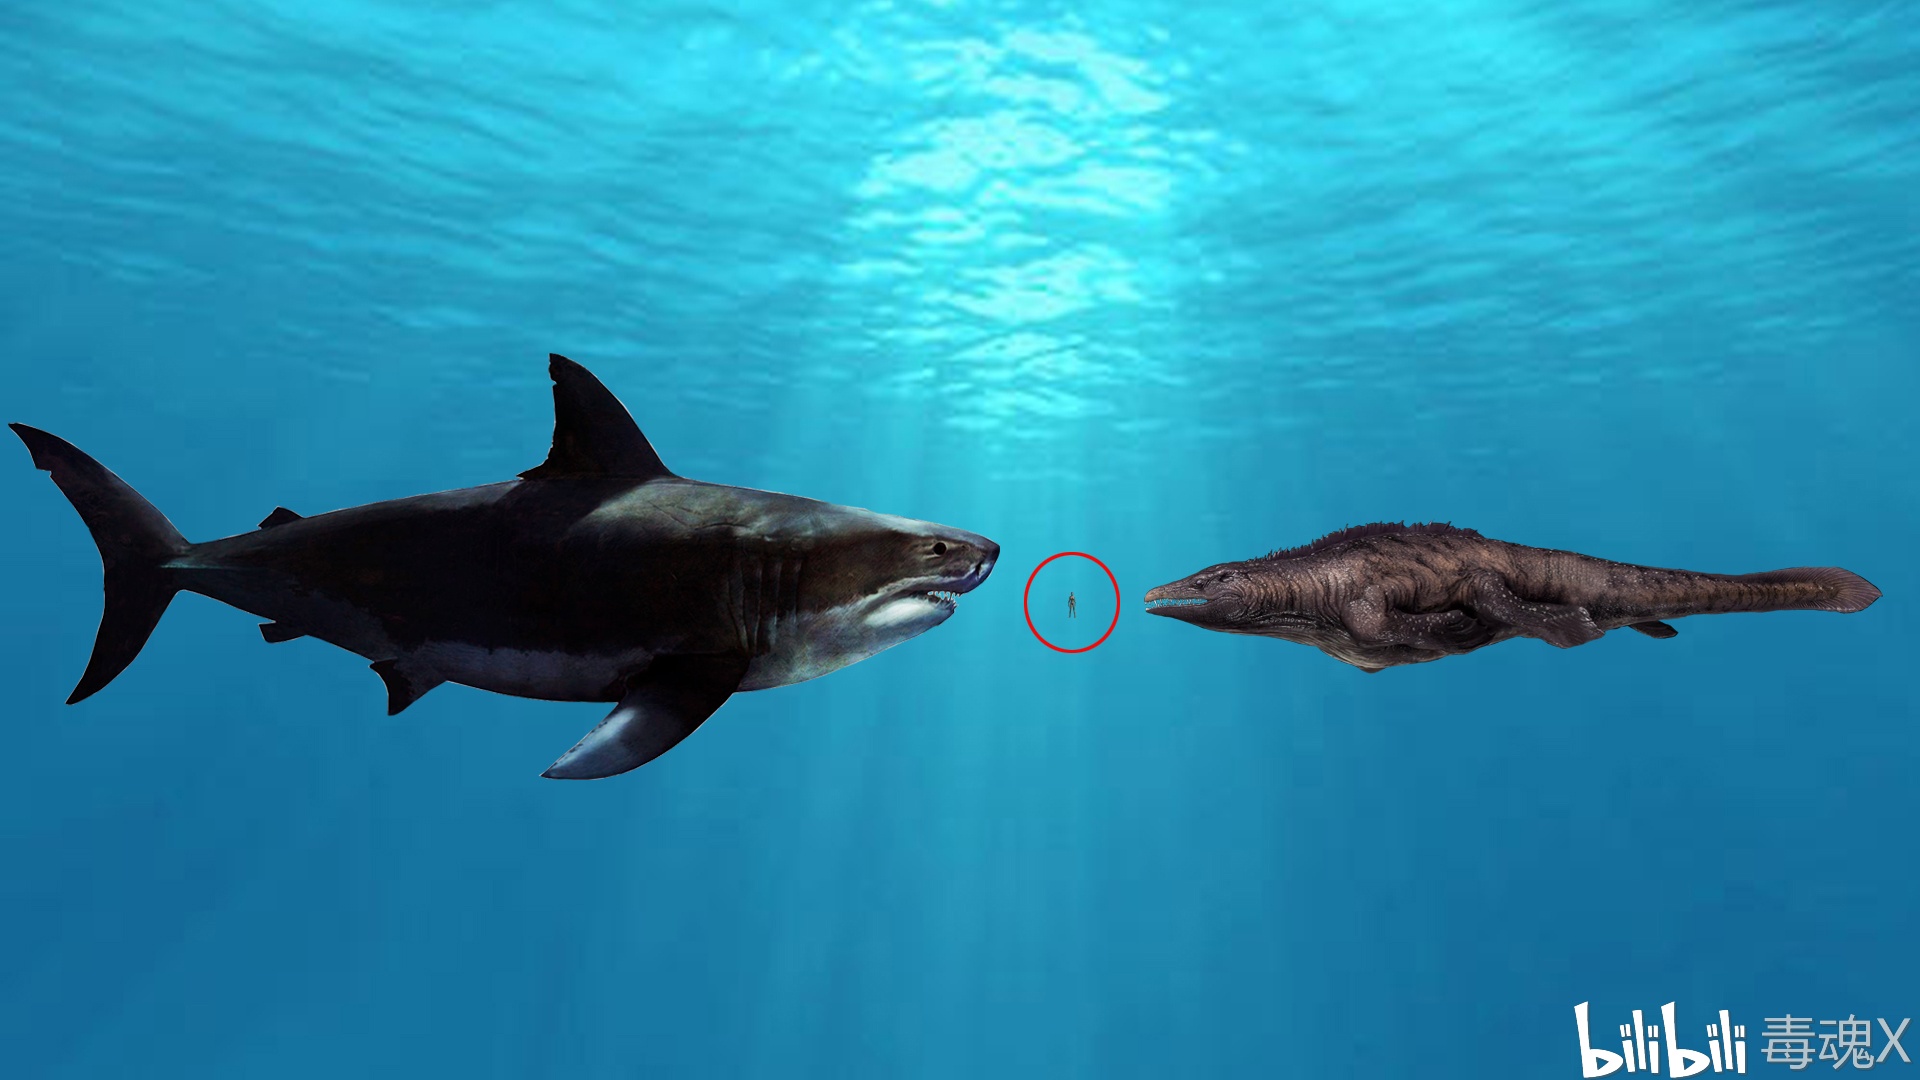 血刃巨齿鲨与方舟沧龙及玩家(红圈)的体型对比